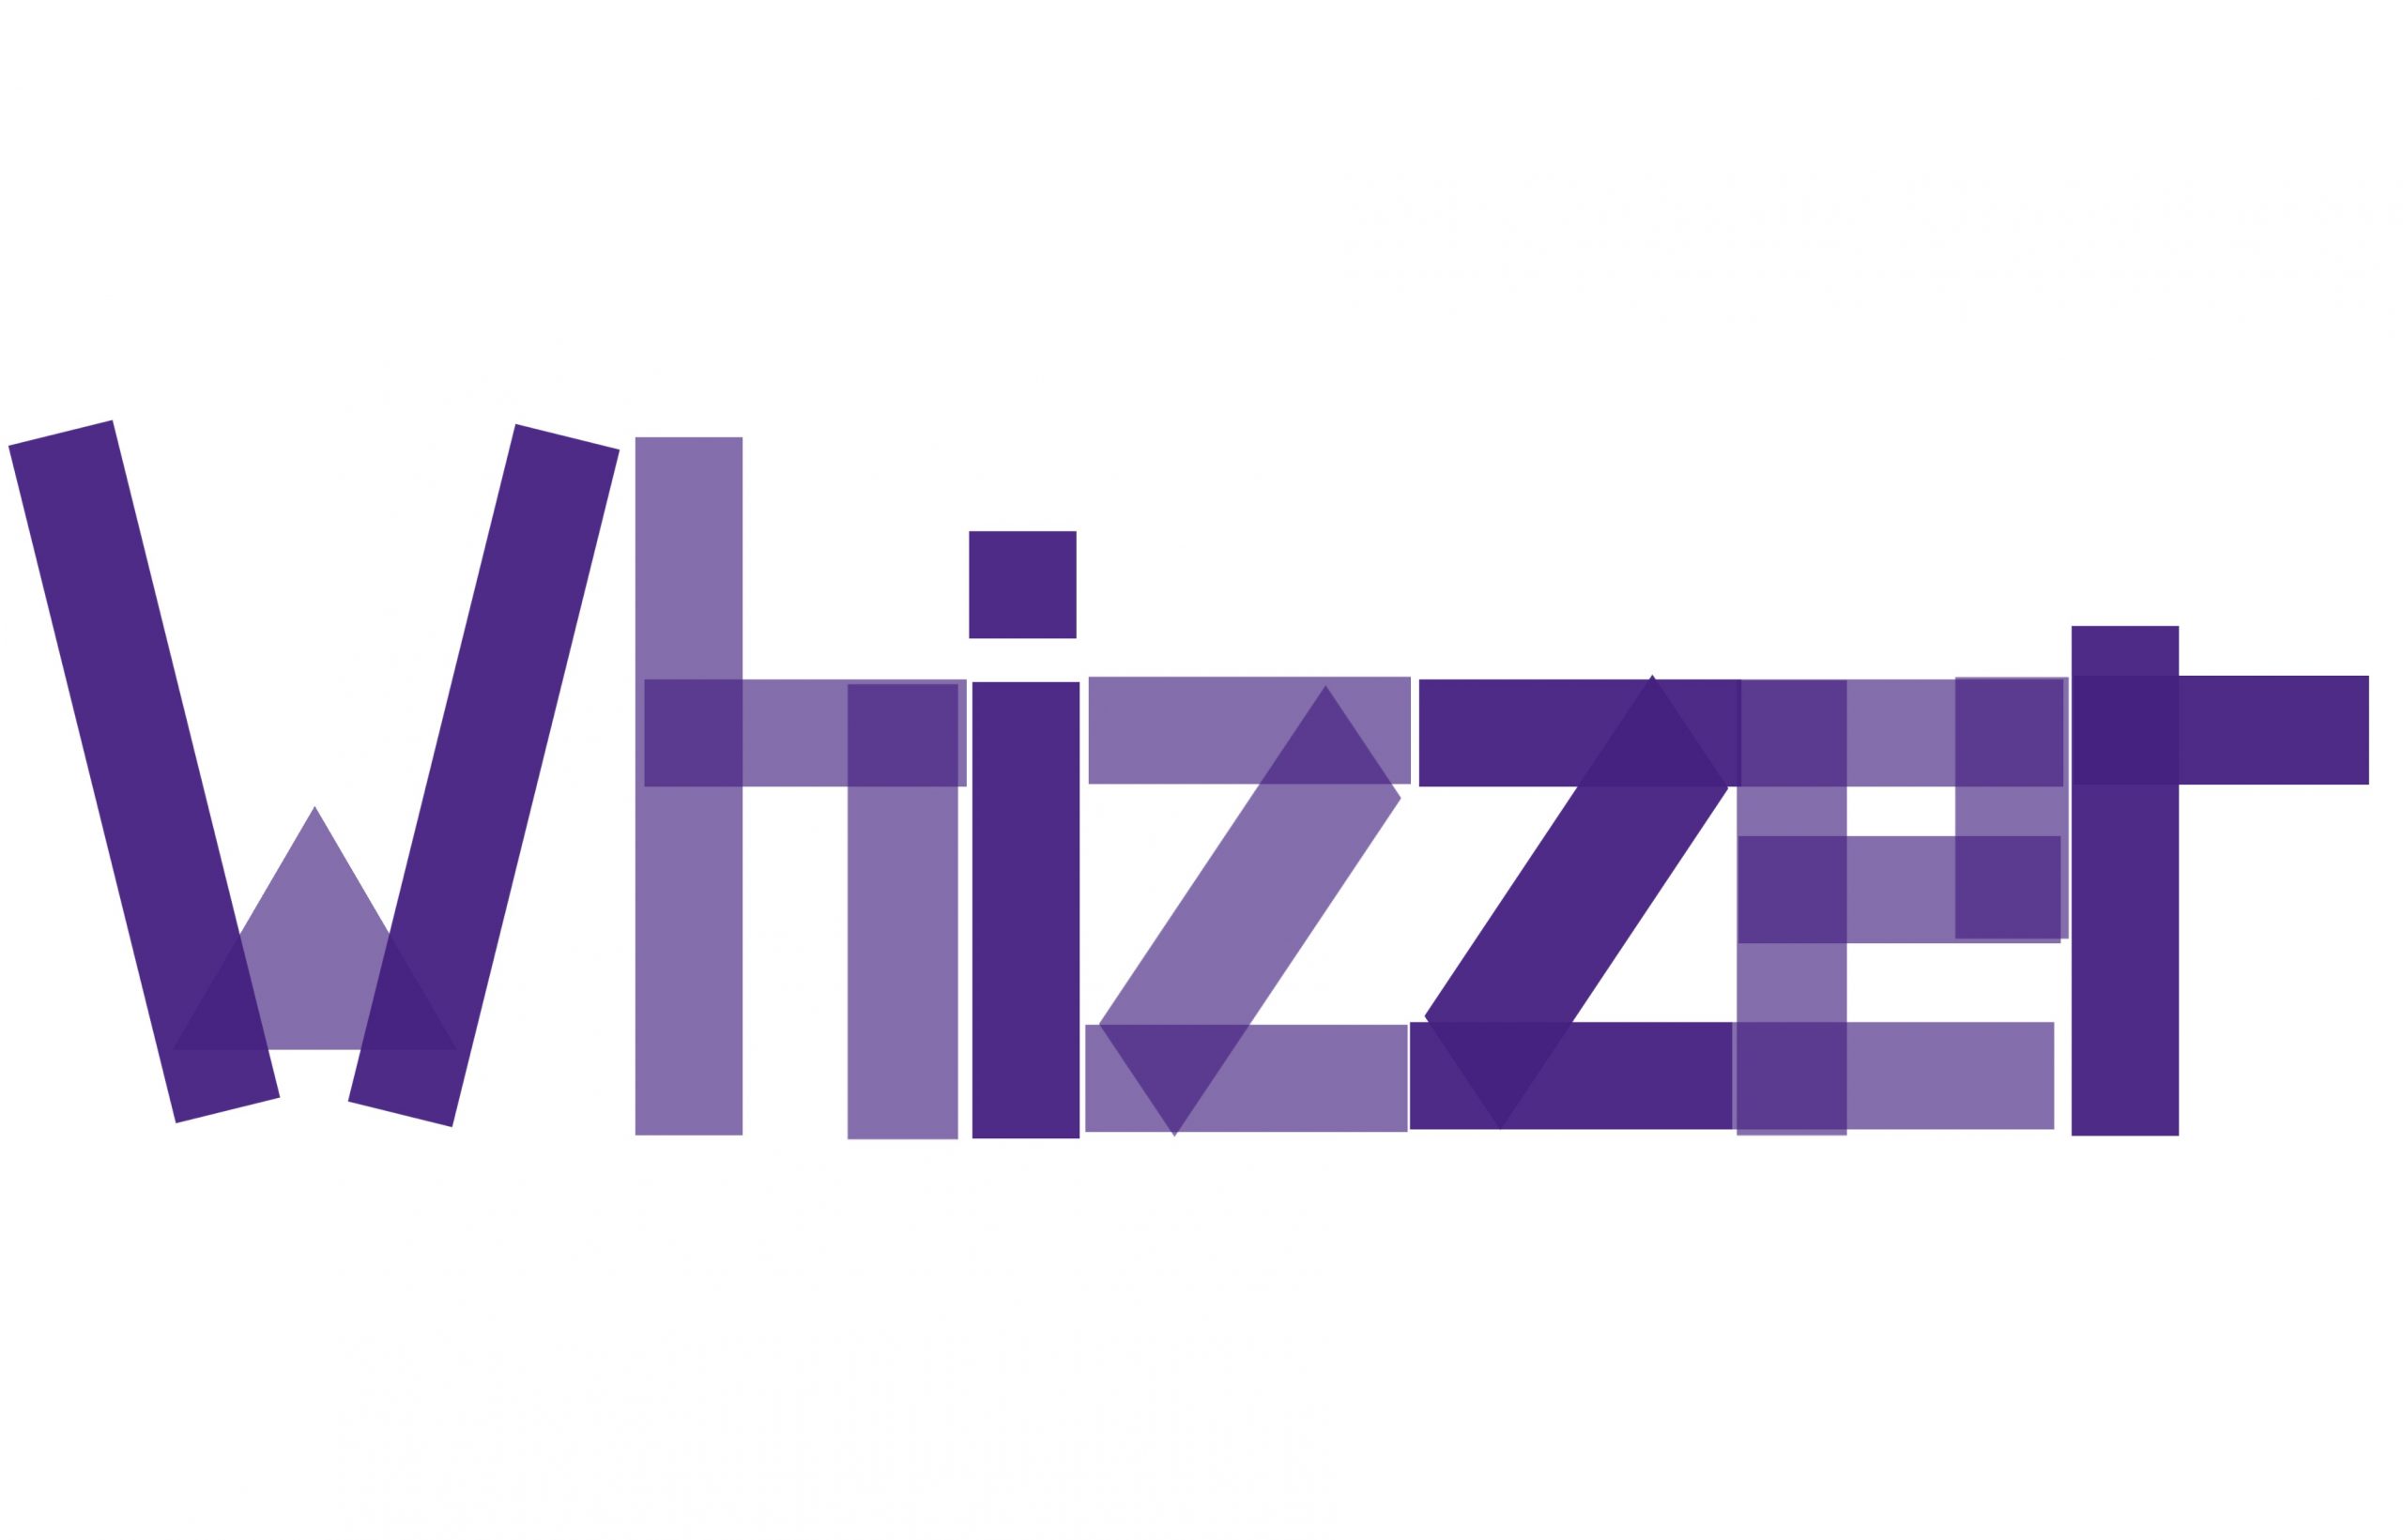 Whizzer